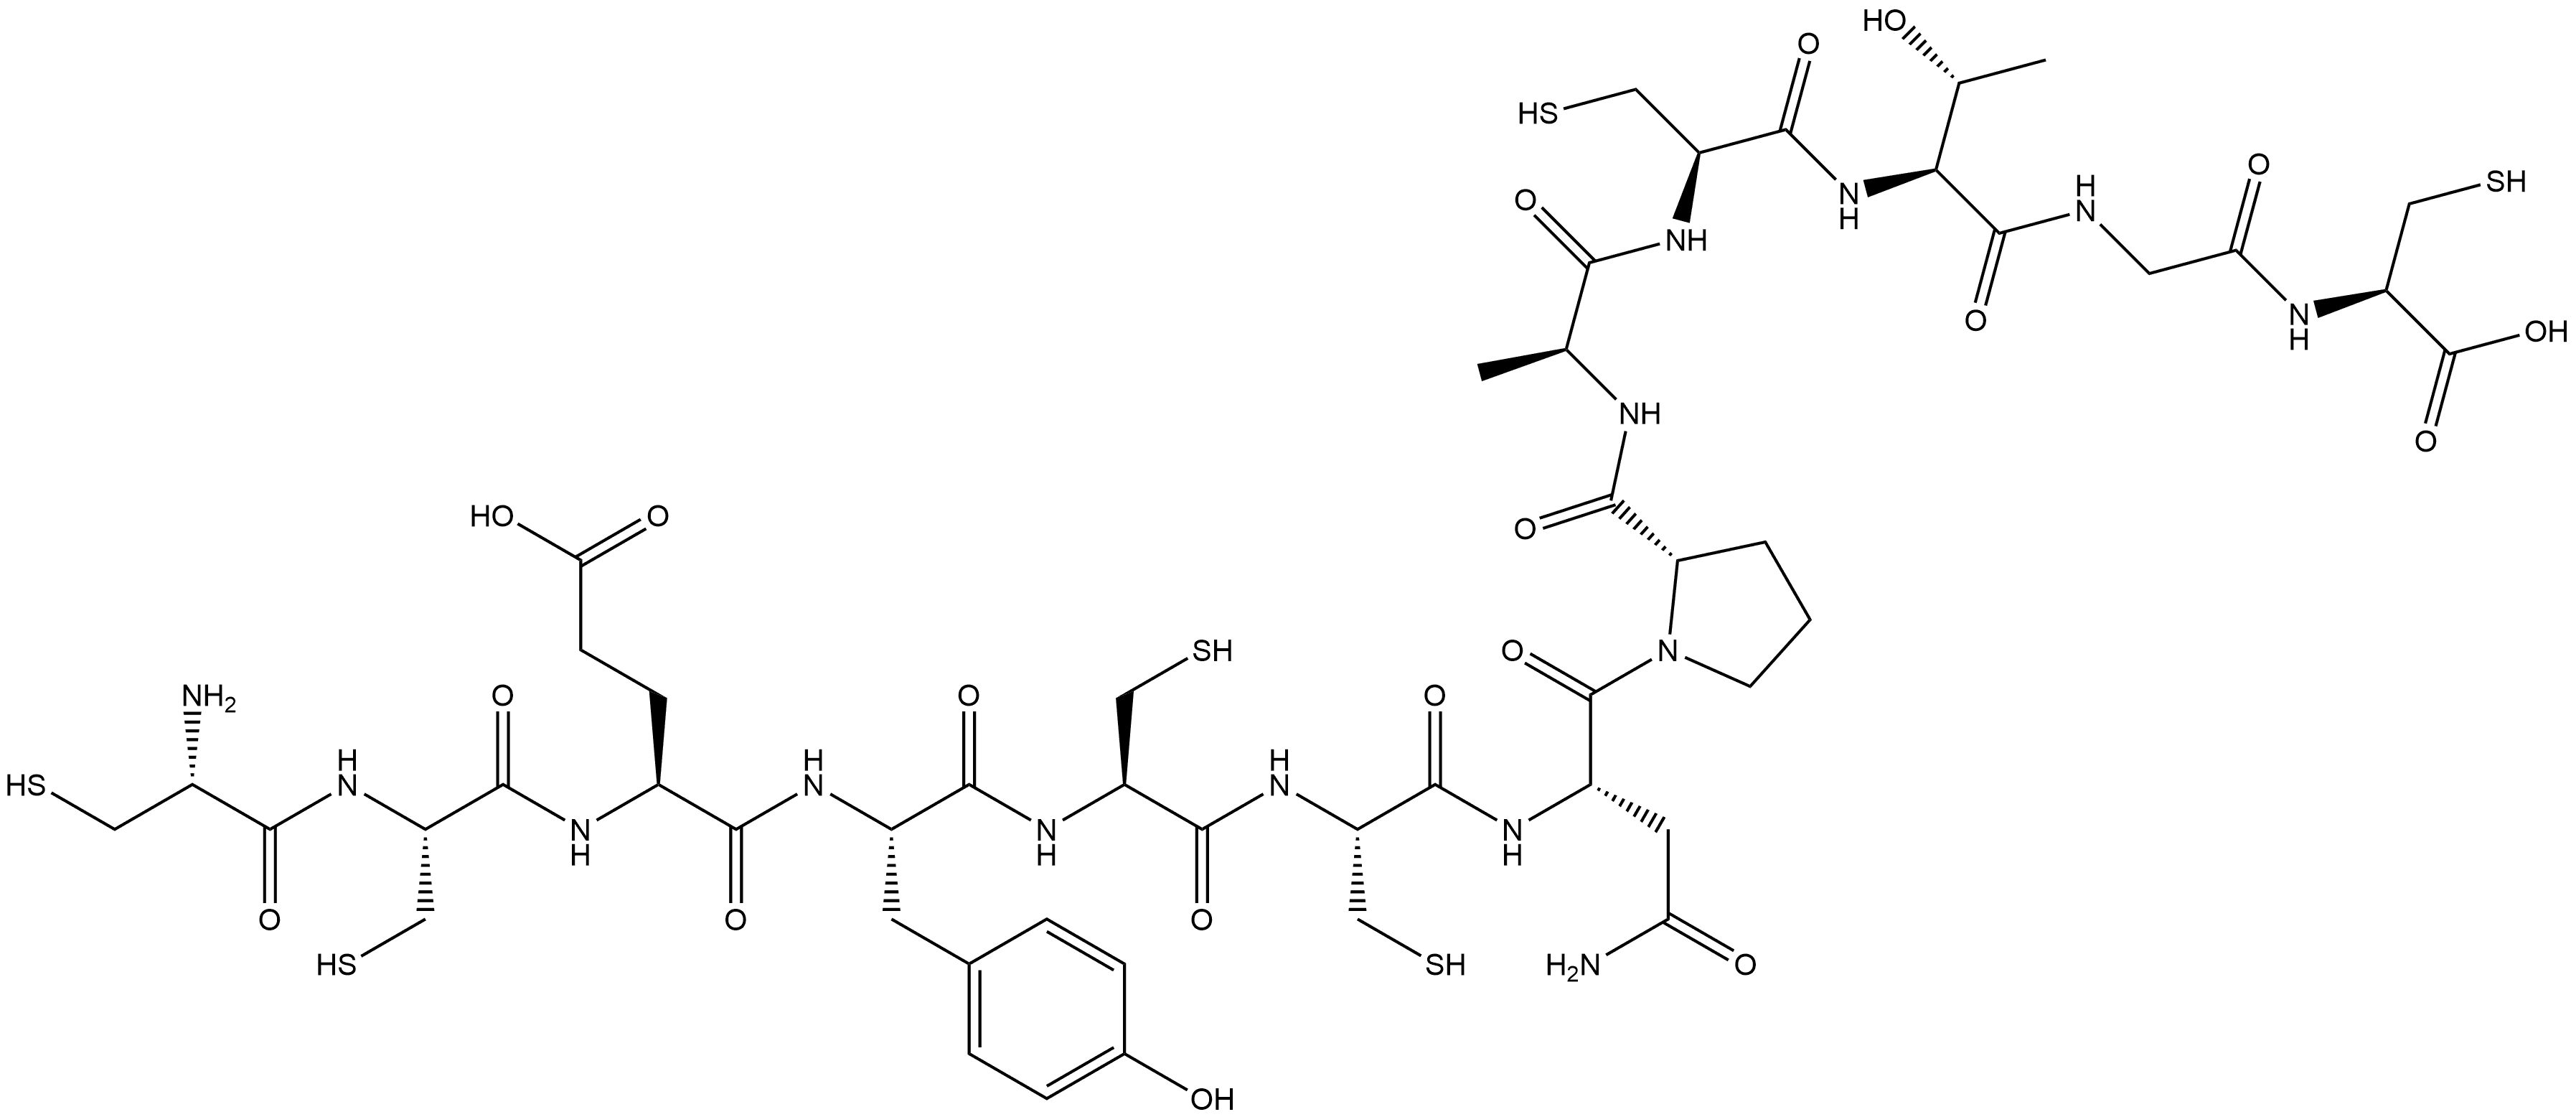 832118-08-8 L-Cysteine, L-cysteinyl-L-cysteinyl-L-α-glutamyl-L-tyrosyl-L-cysteinyl-L-cysteinyl-L-asparaginyl-L-prolyl-L-alanyl-L-cysteinyl-L-threonylglycyl-